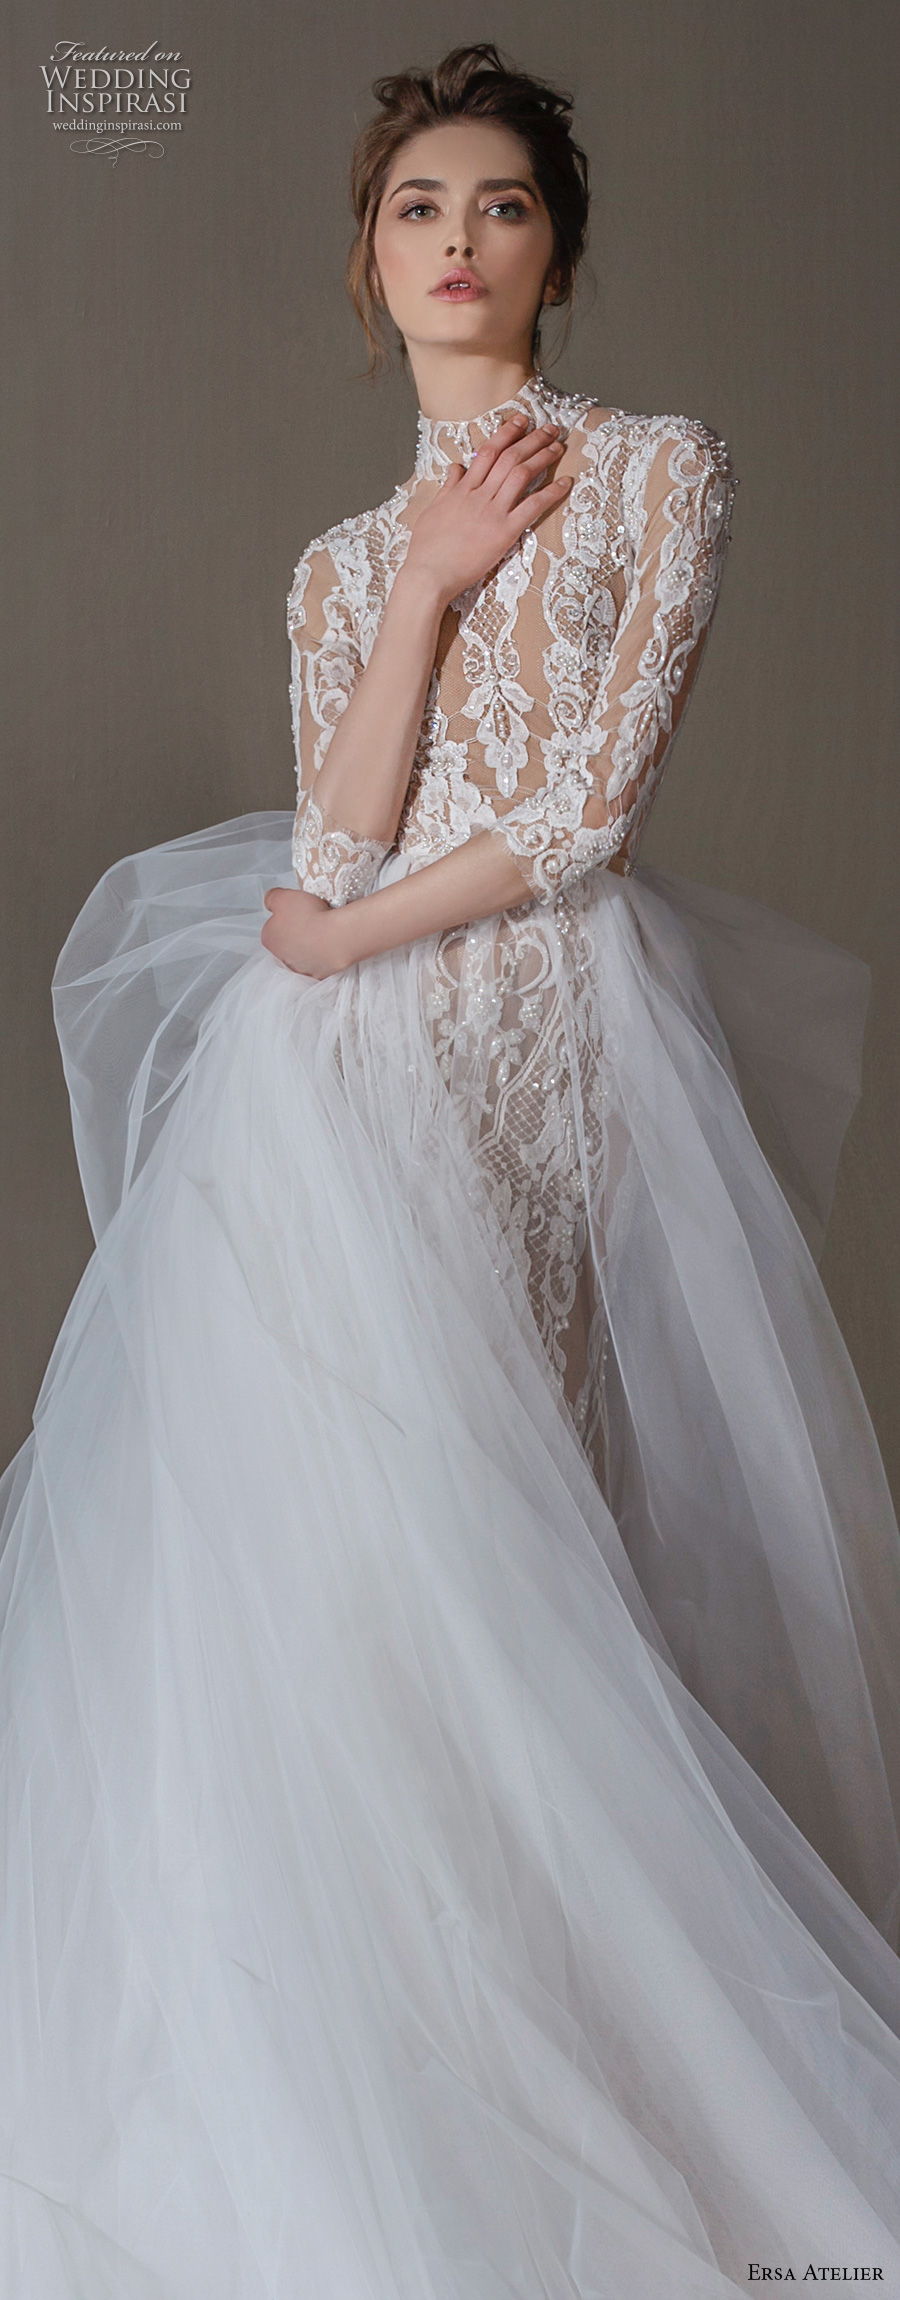 ersa atelier spring 2020 bridal three quarter sleeves high neck full embellishment elegant a  line wedding dress overskirt (19) lv